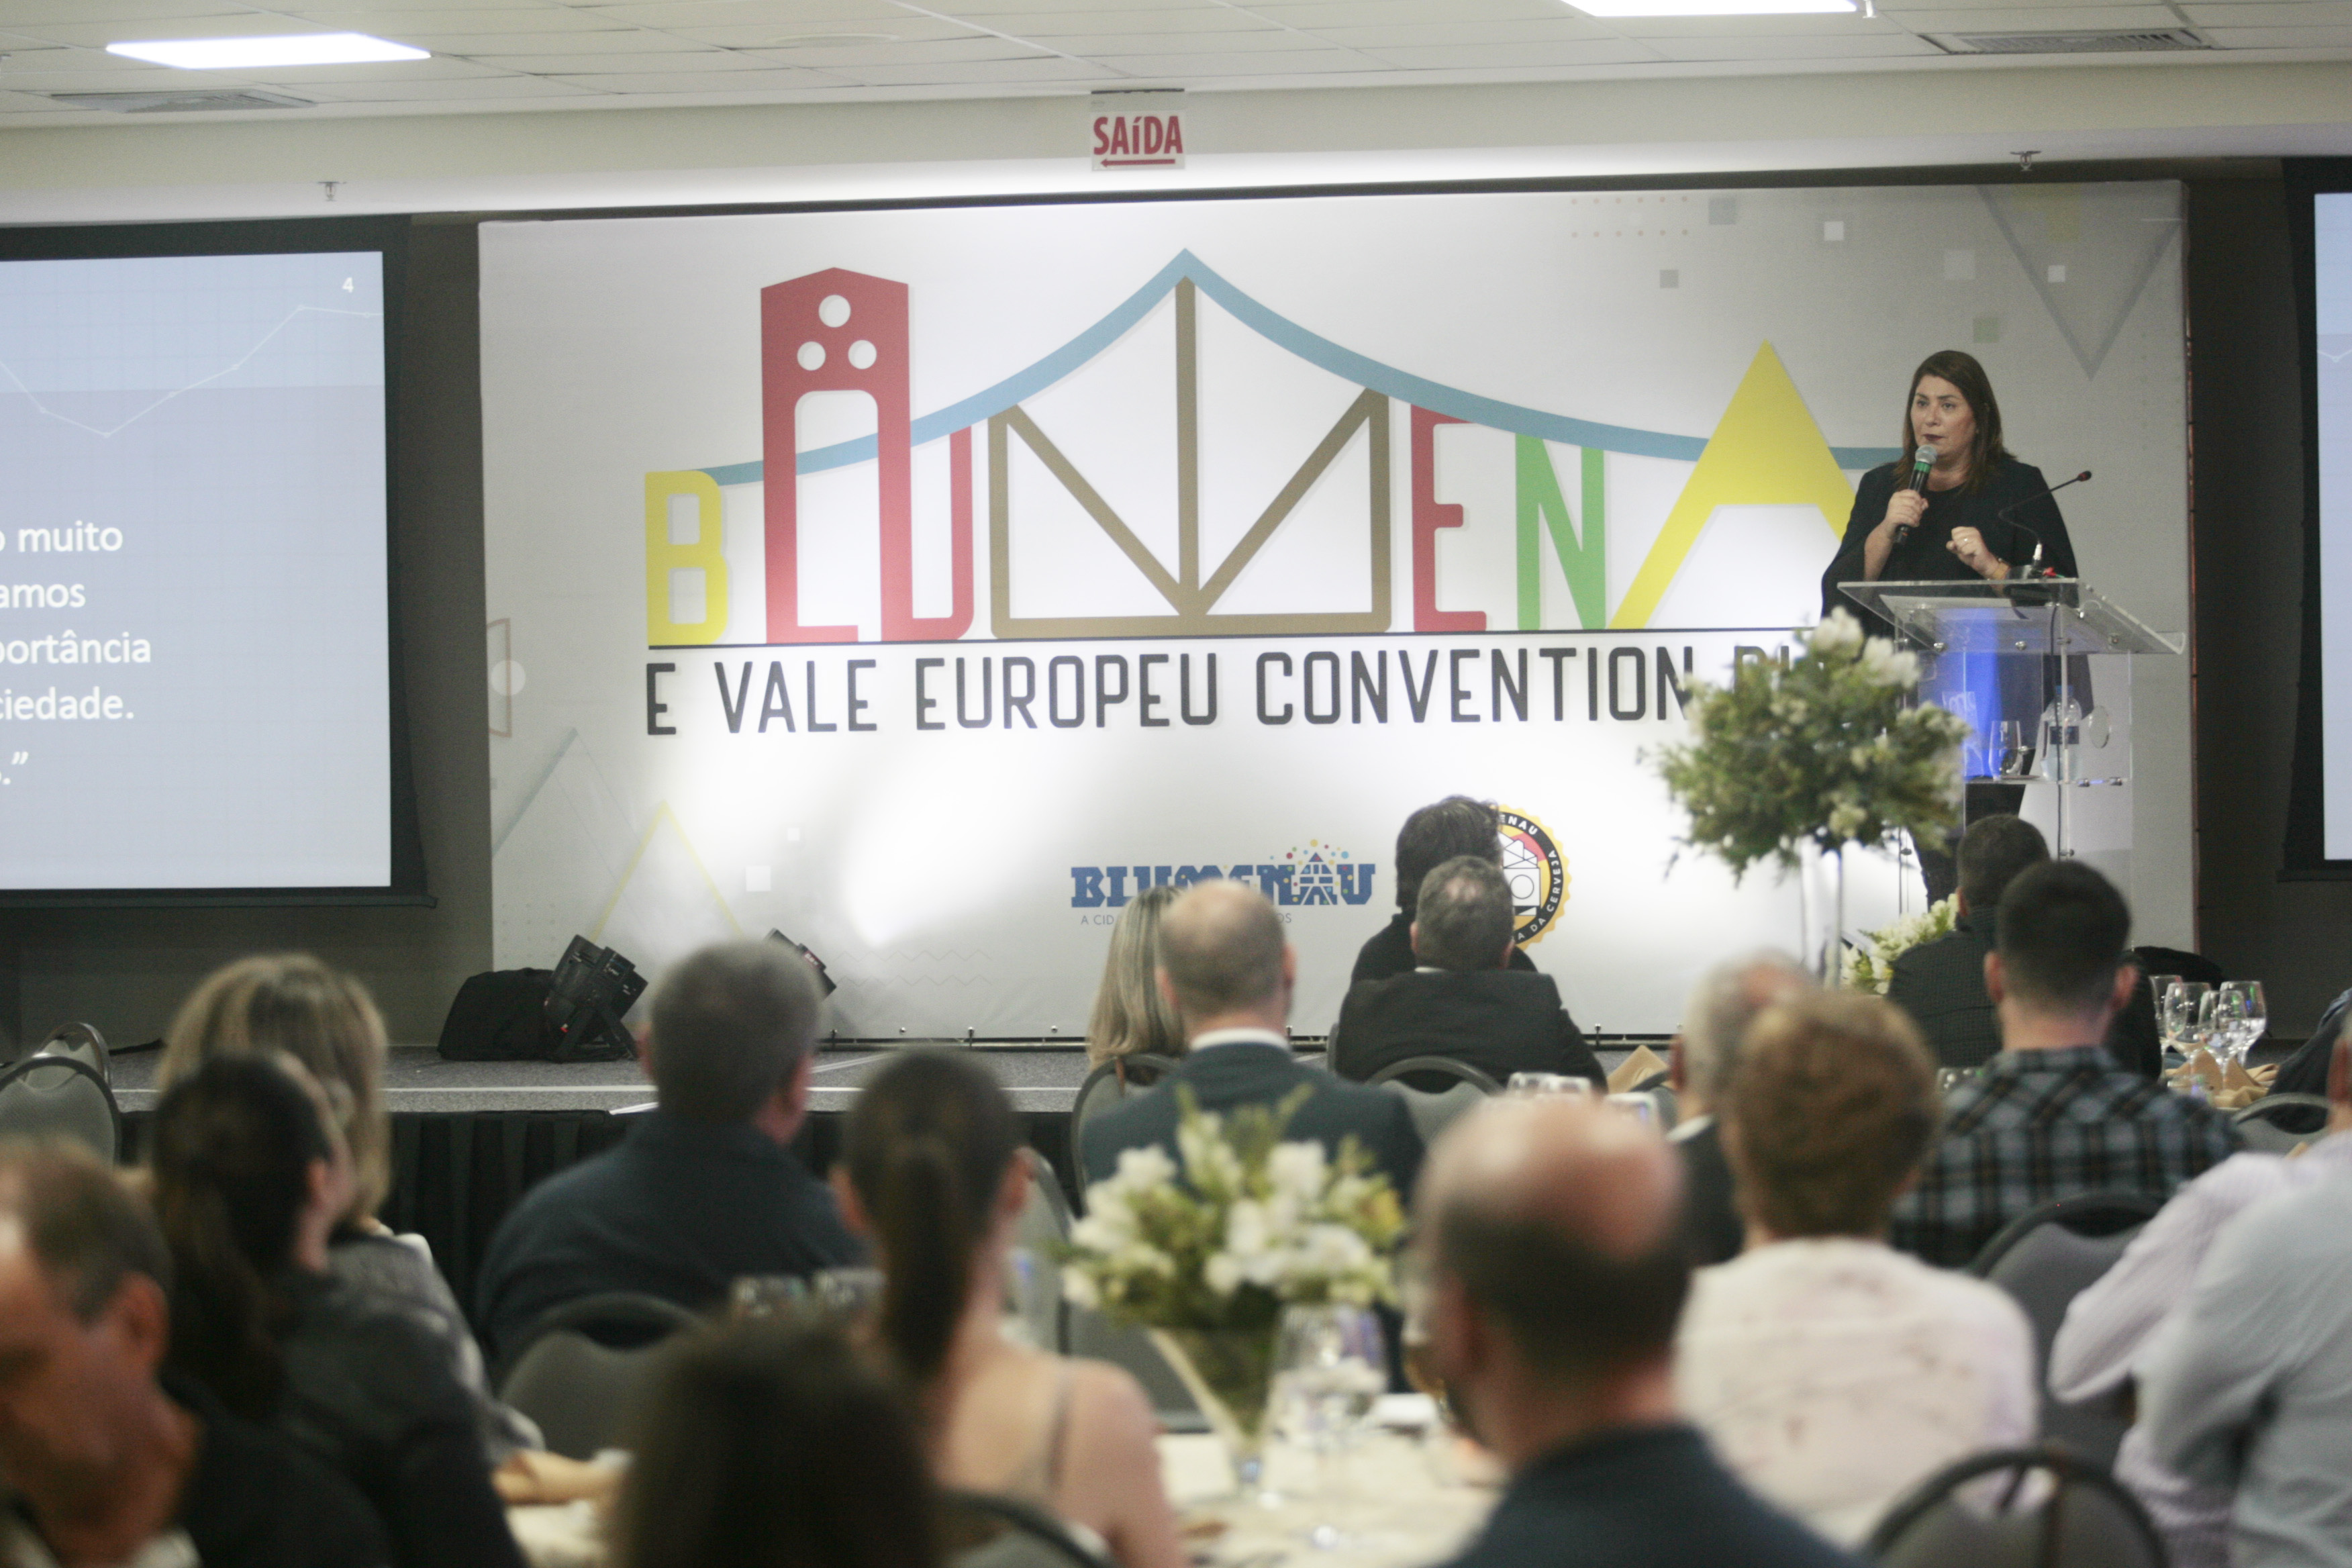 Onze pessoas homenageadas durante o 1º MICE de Turismo Blumenau e Vale Europeu